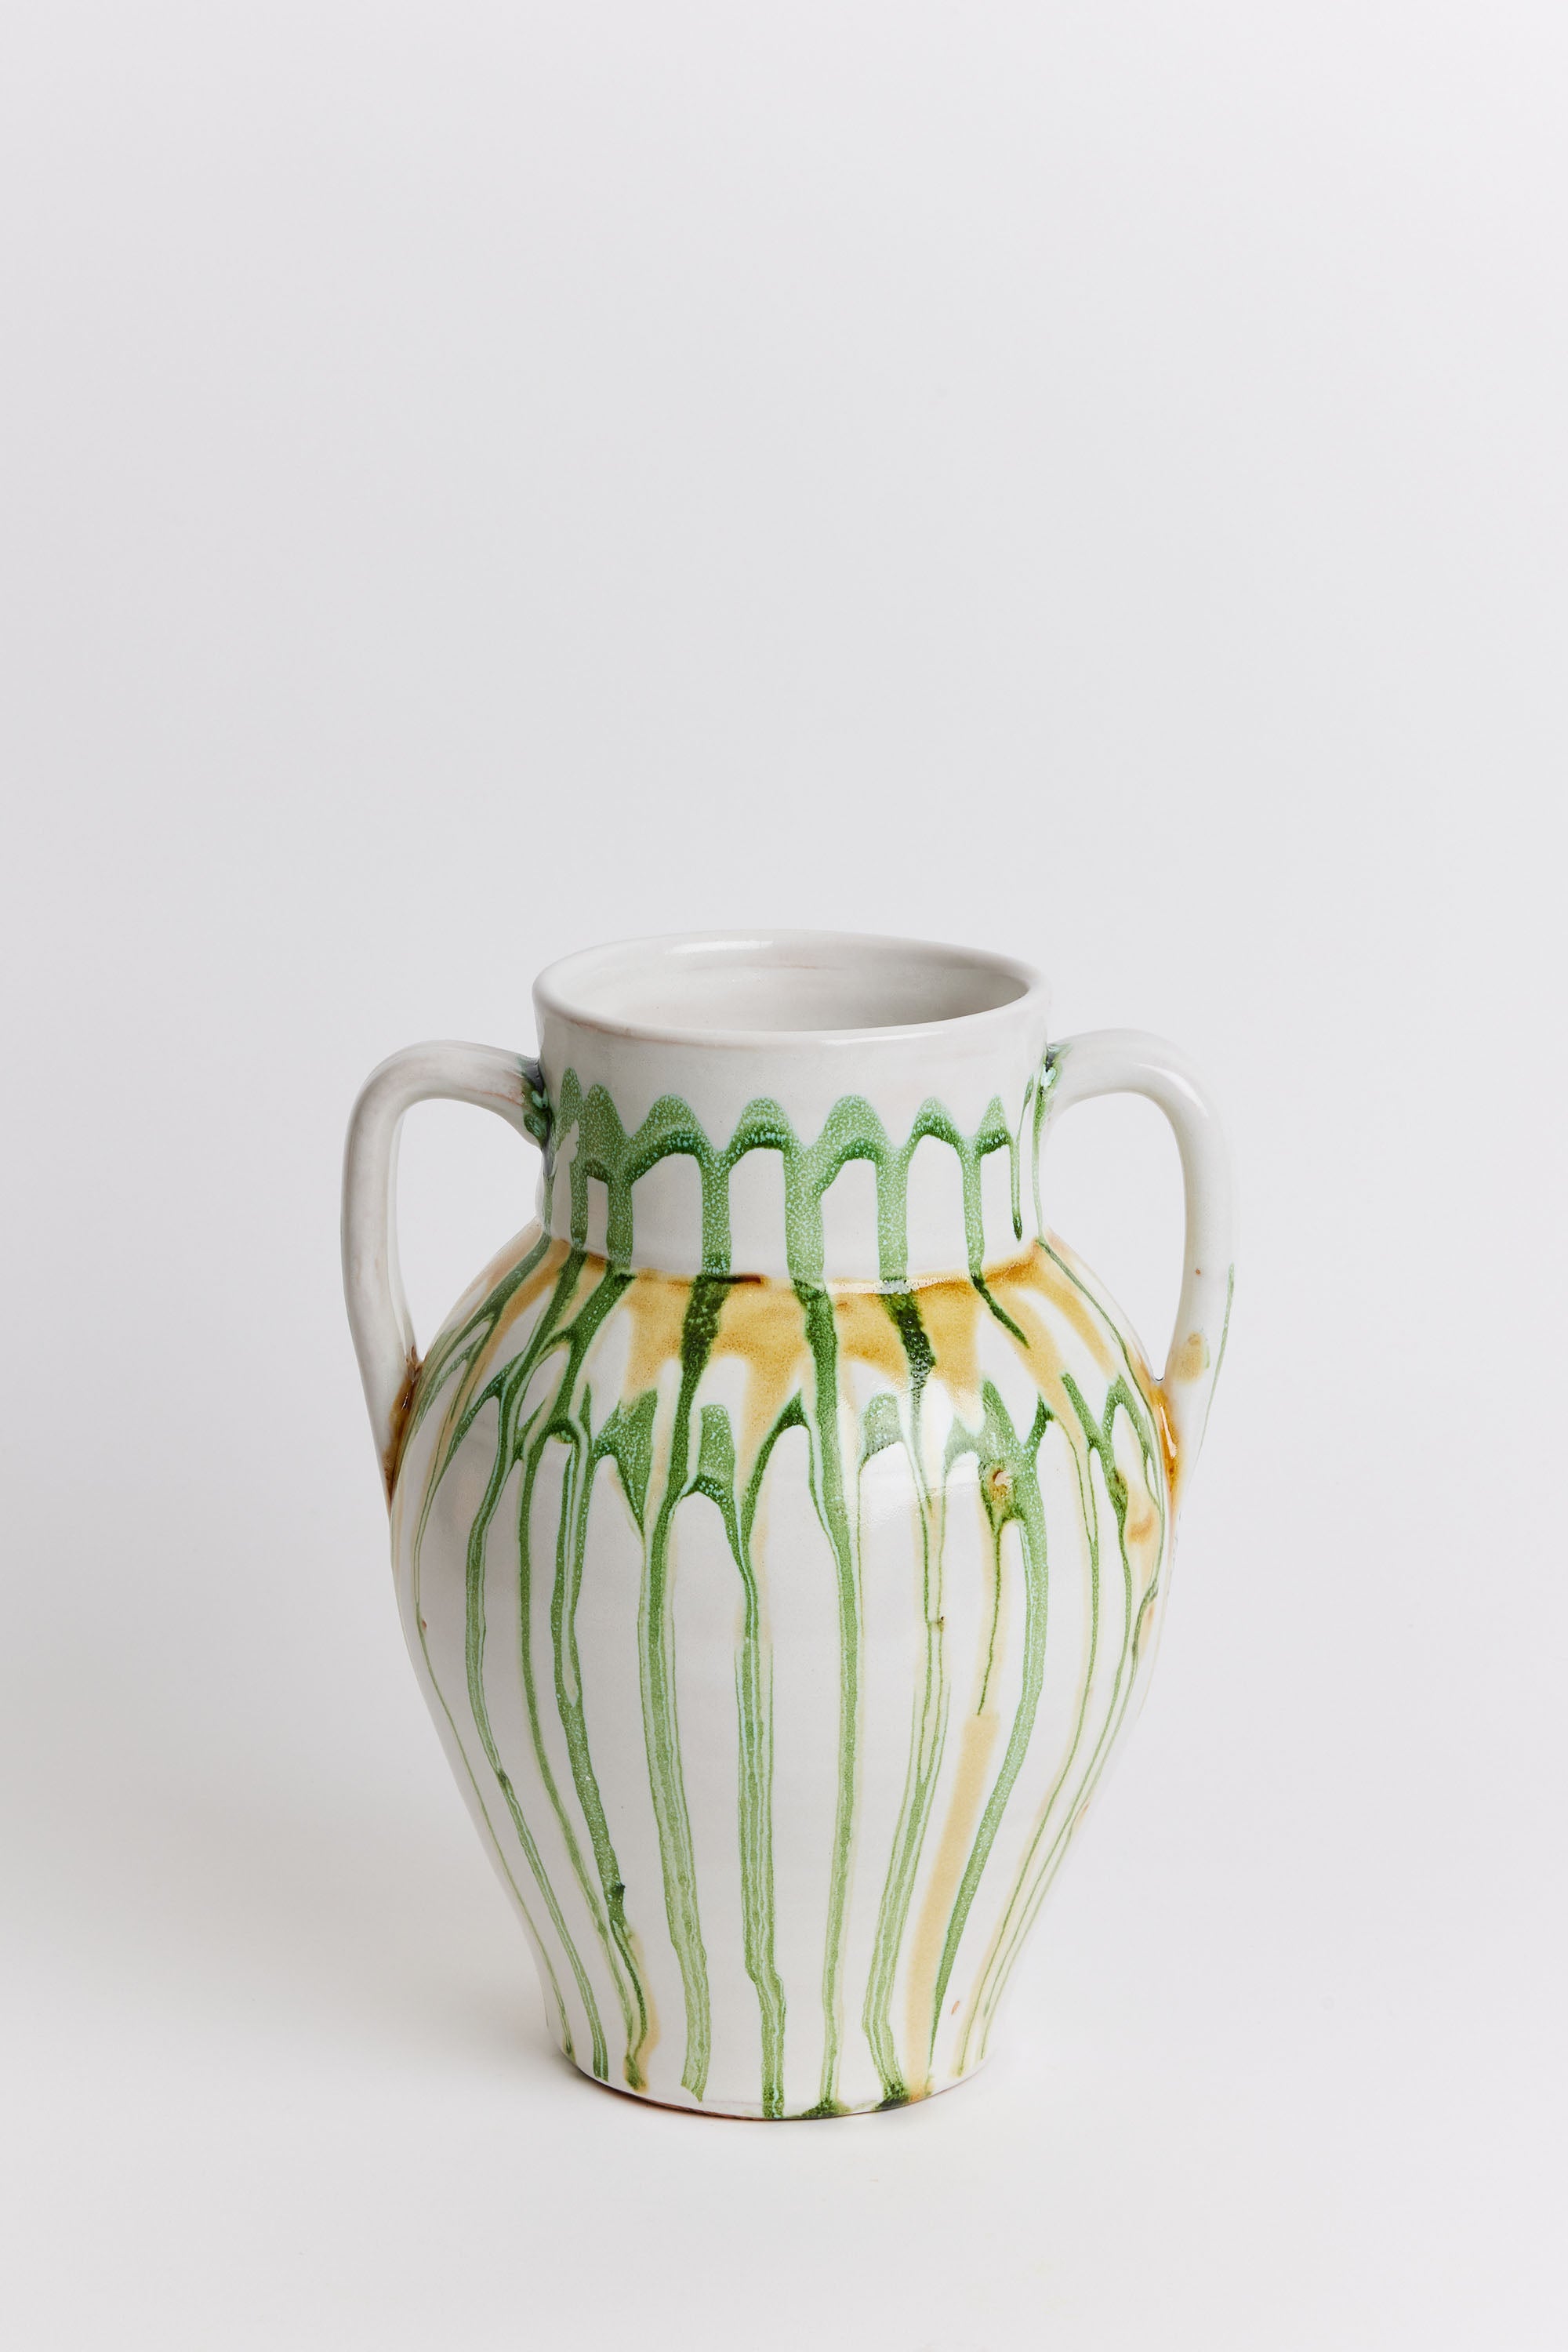 Nicola Fasano Ceramic Vase